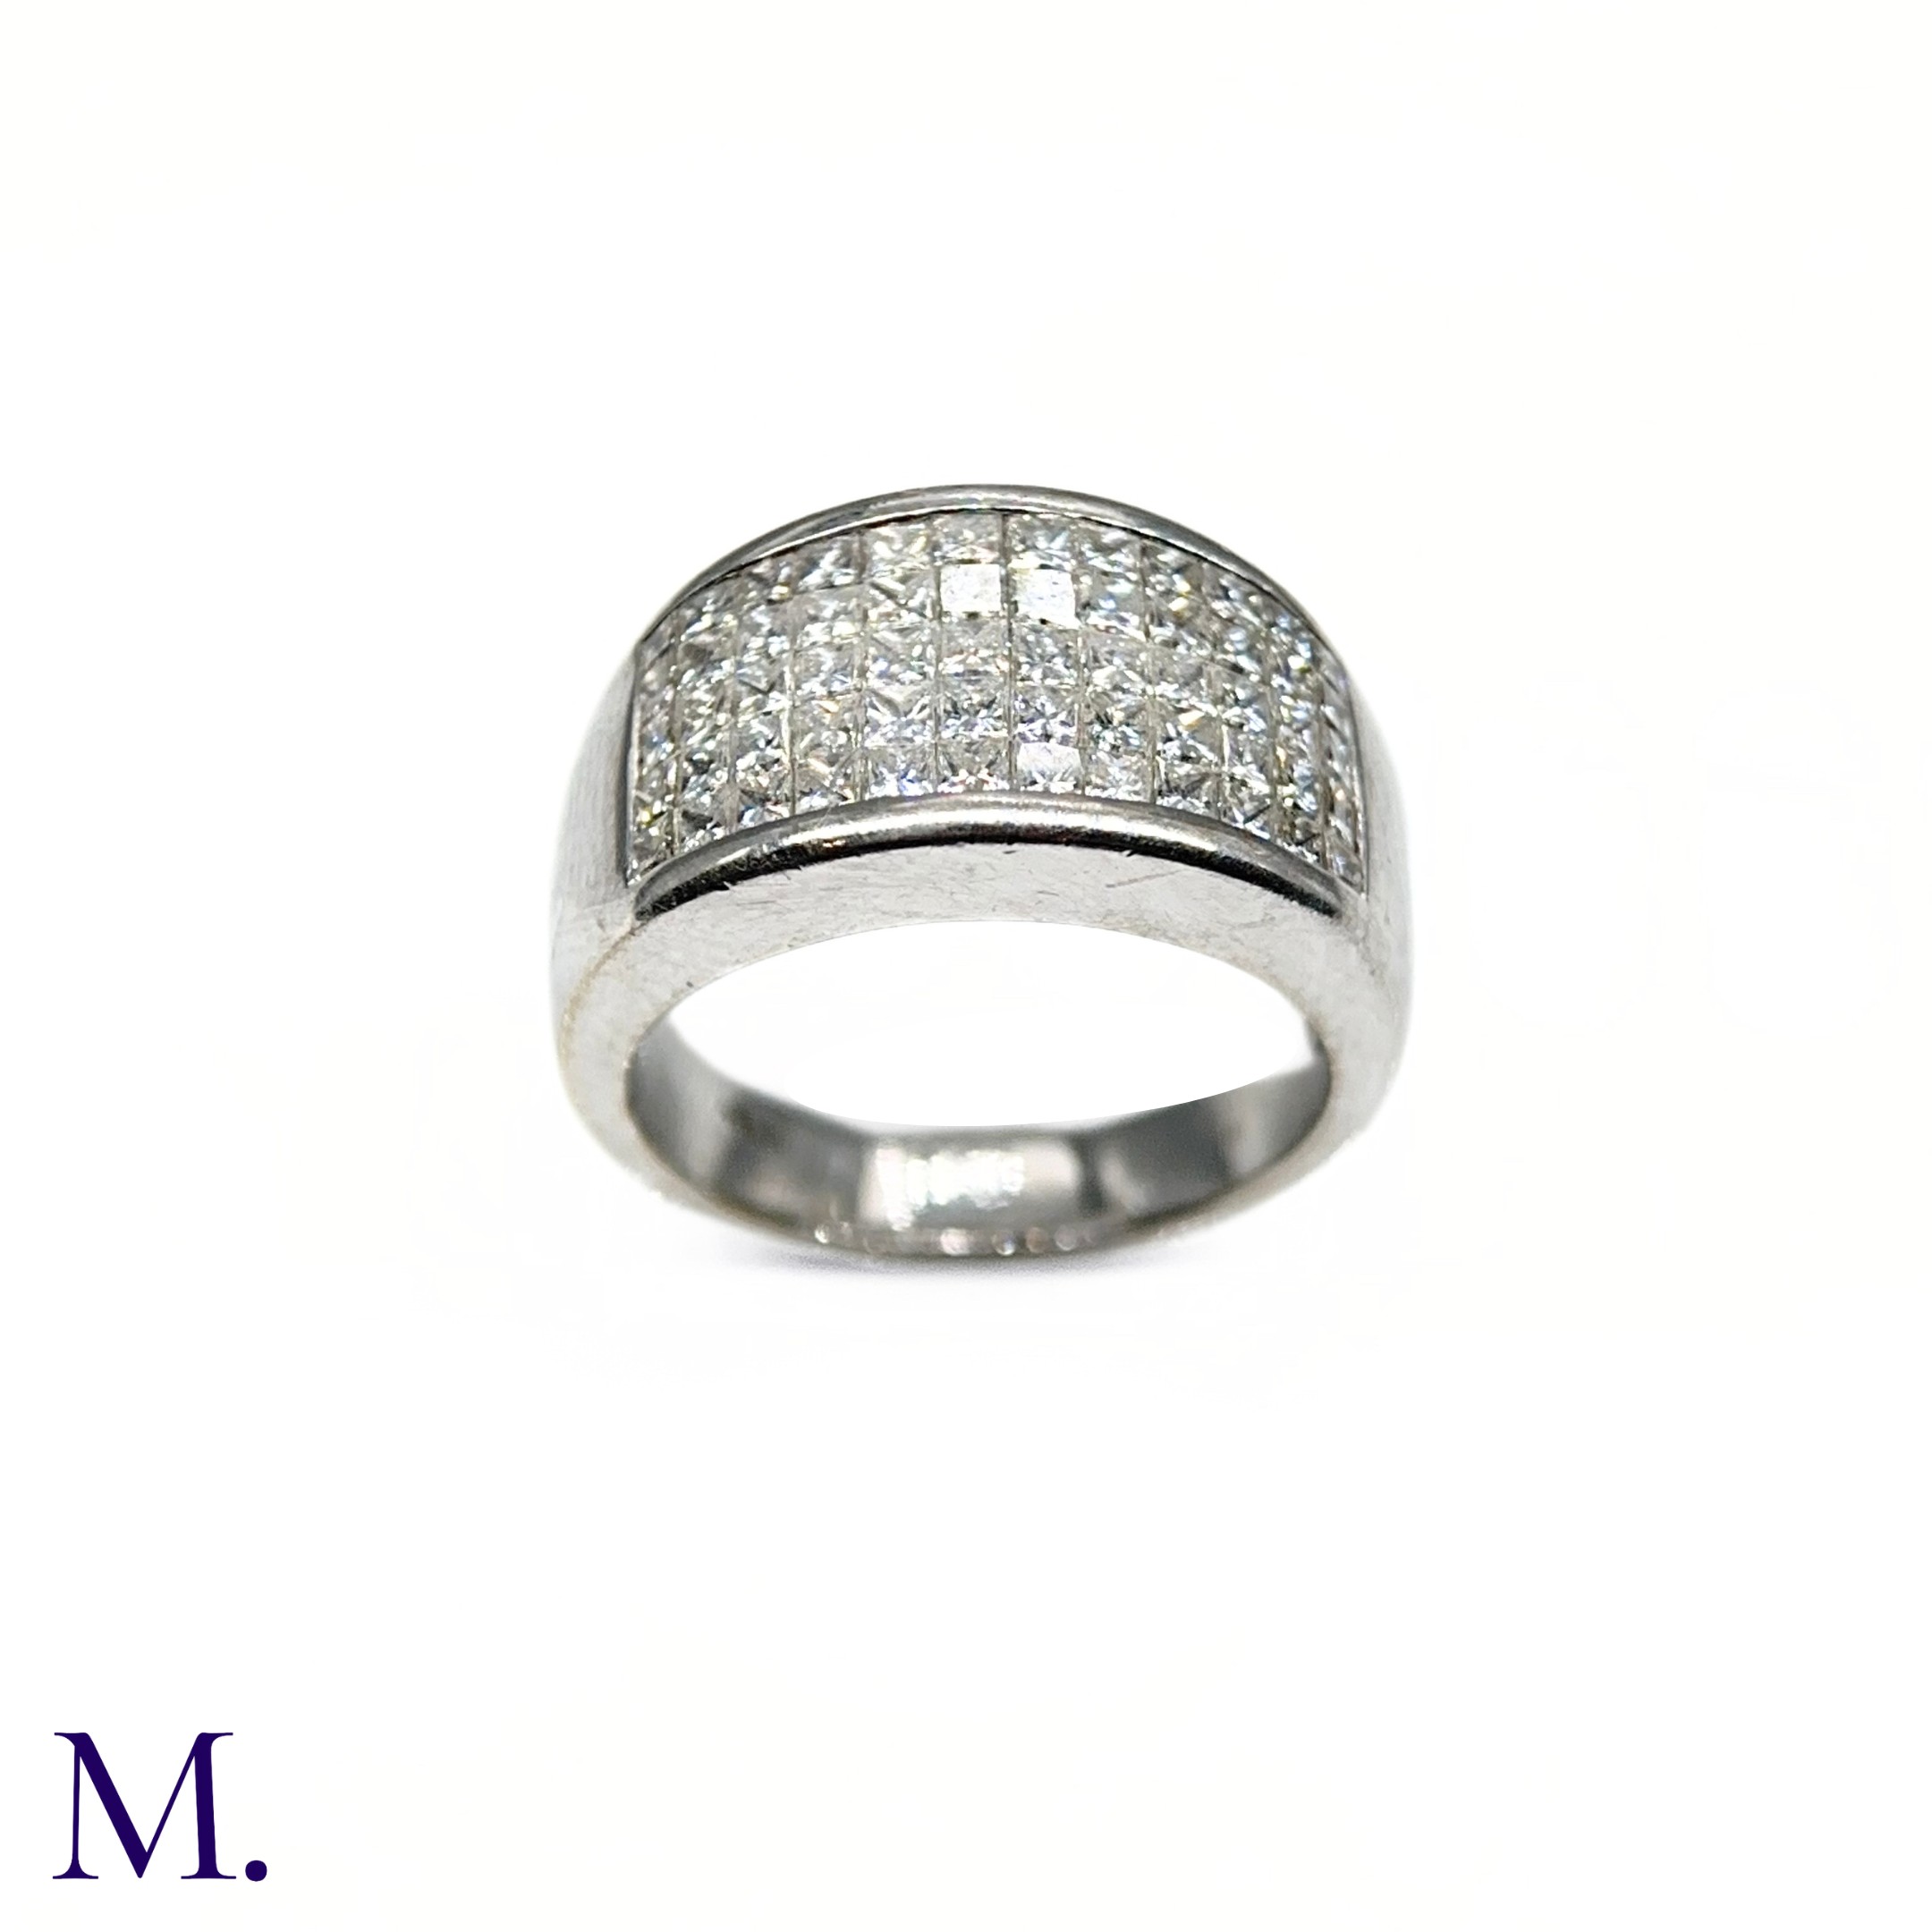 An 5-Row Asscher-cut Diamond Ring